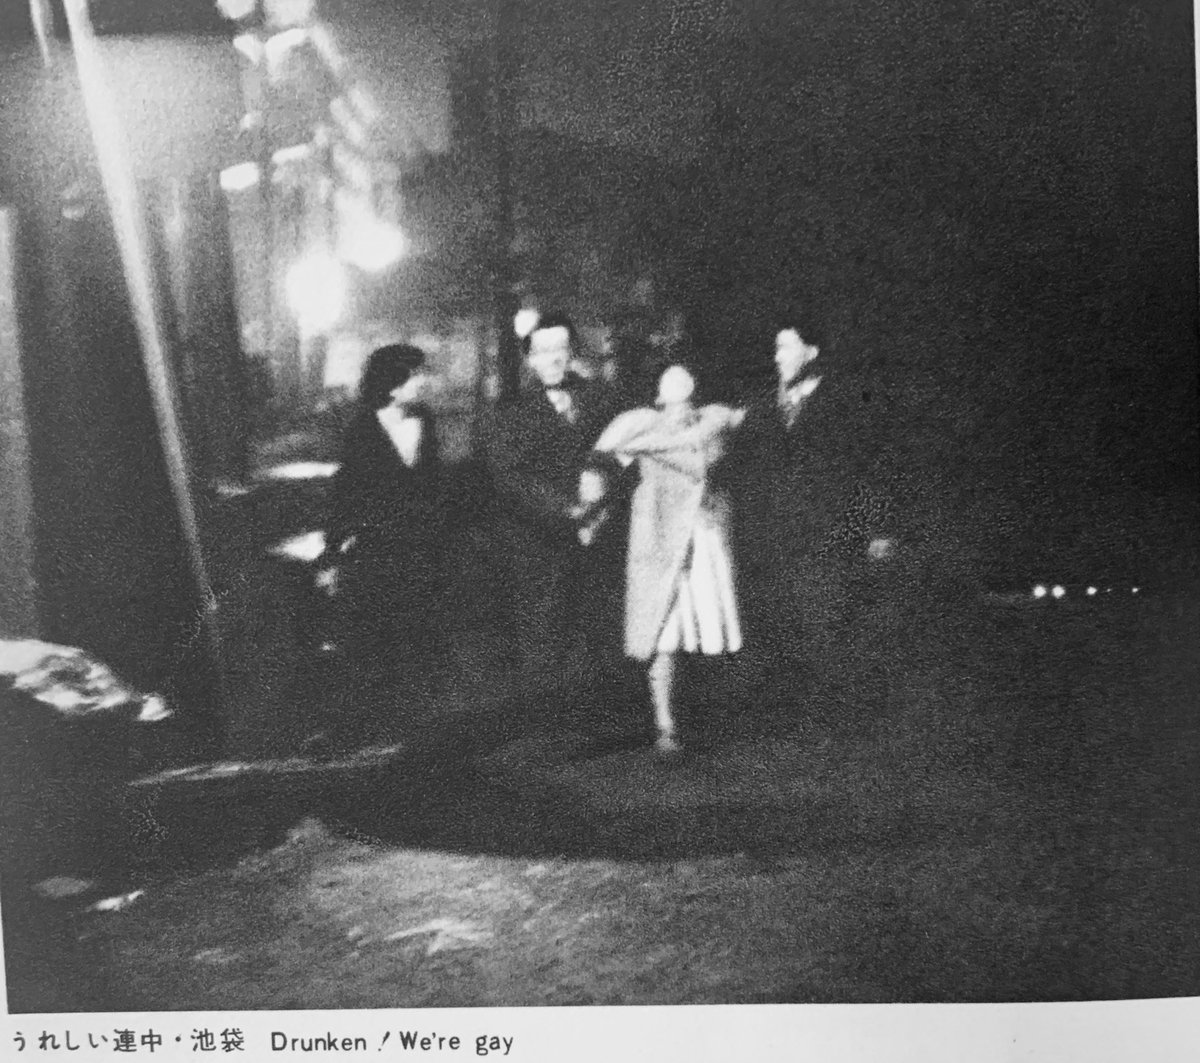 別にどうってことない写真集買ったけど、何か心動かされるものがあった。1957年。夜の東京。
「騒音に没入した憩いはいっそ静寂に近い」 